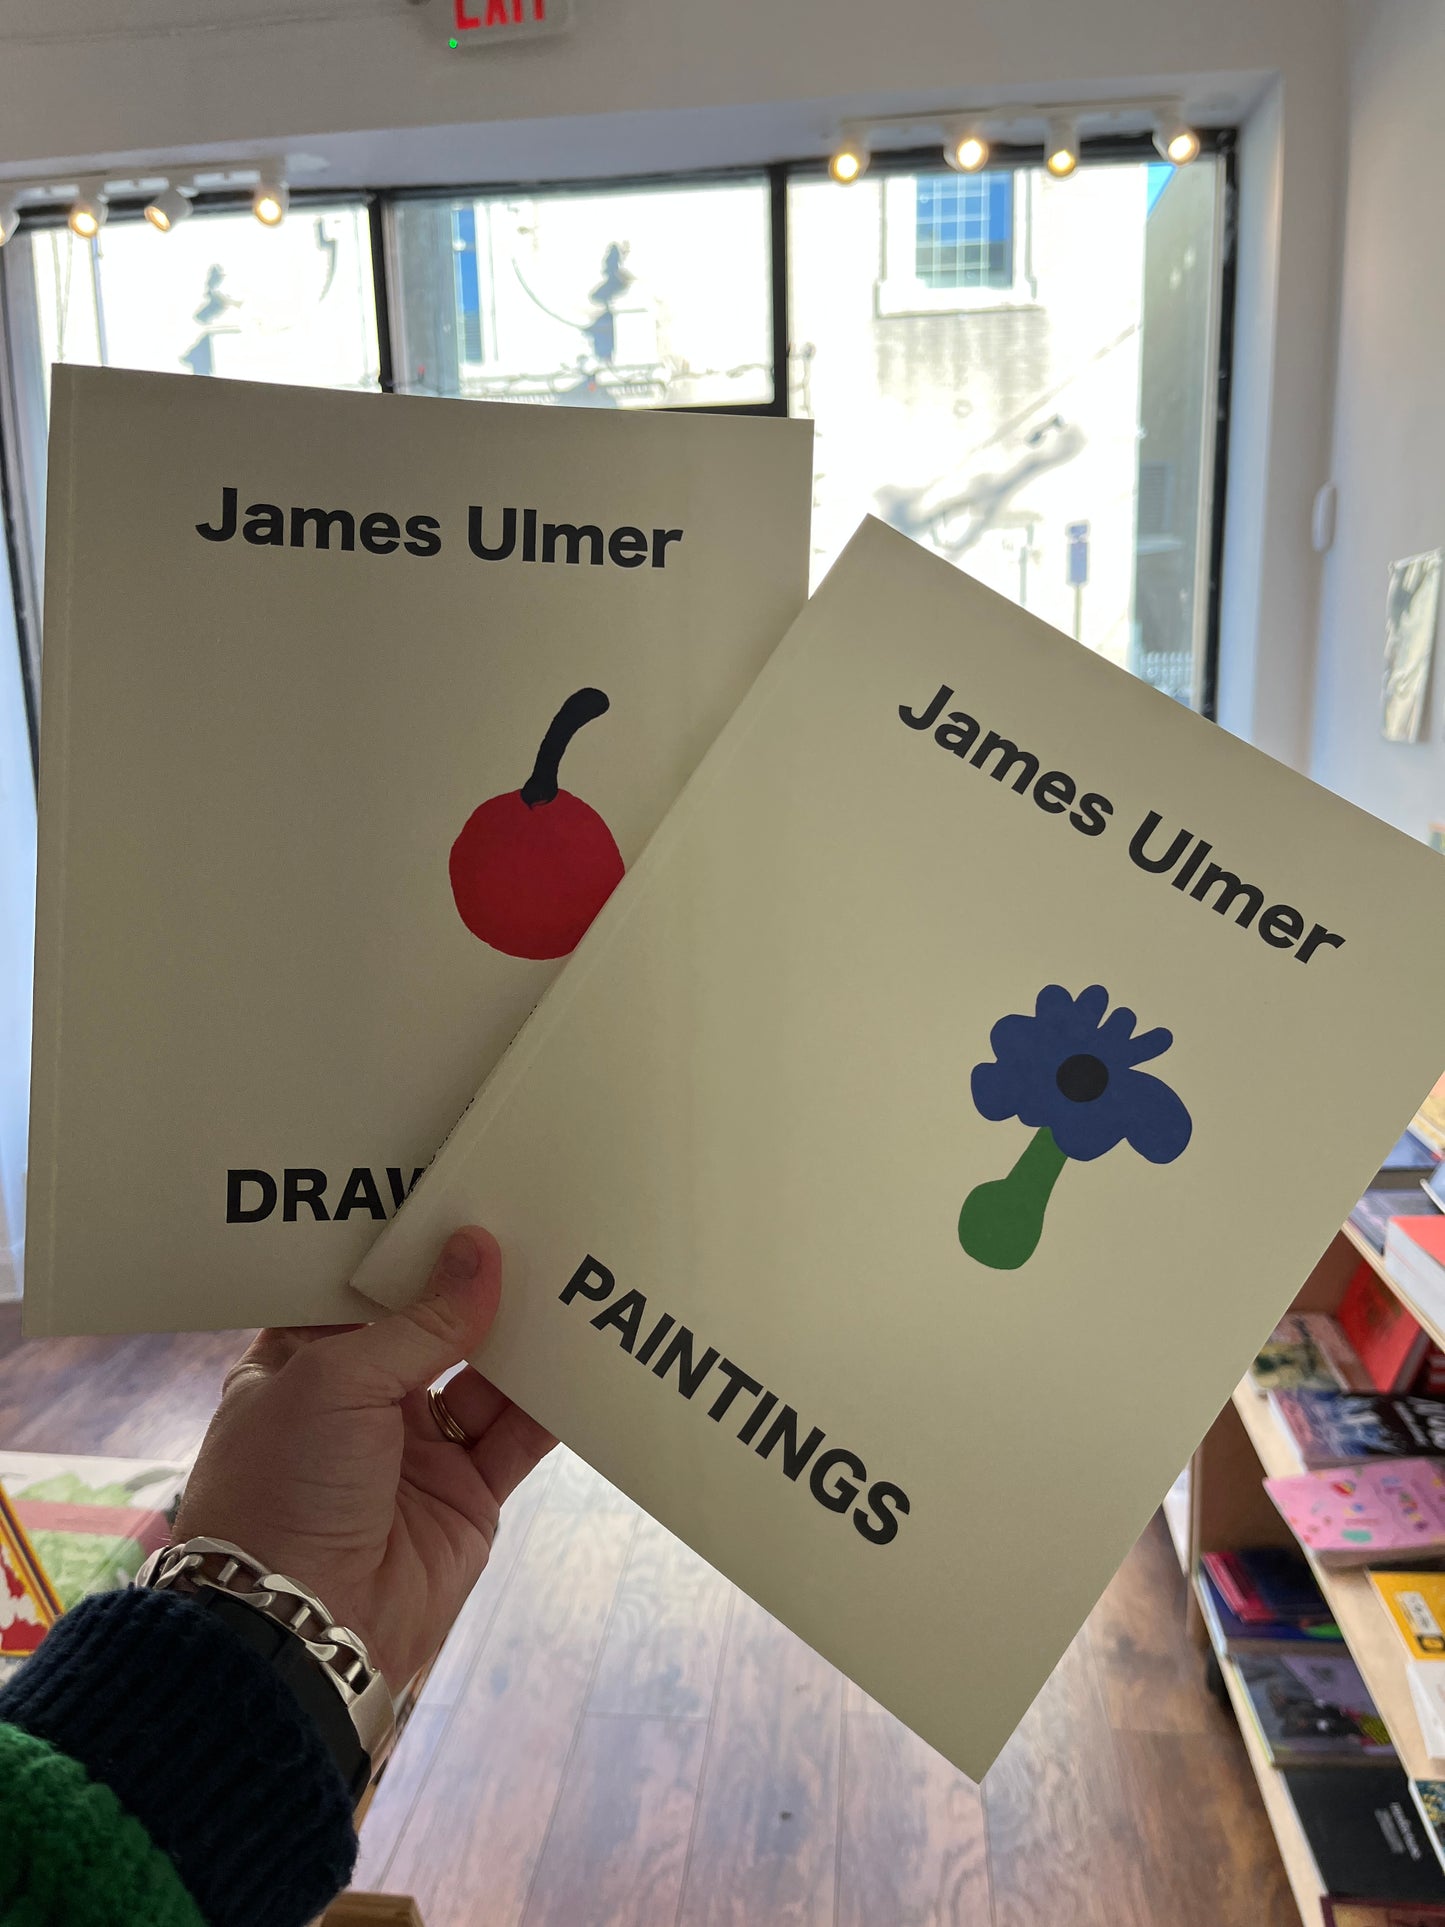 Paintings & Drawings: James Ulmer